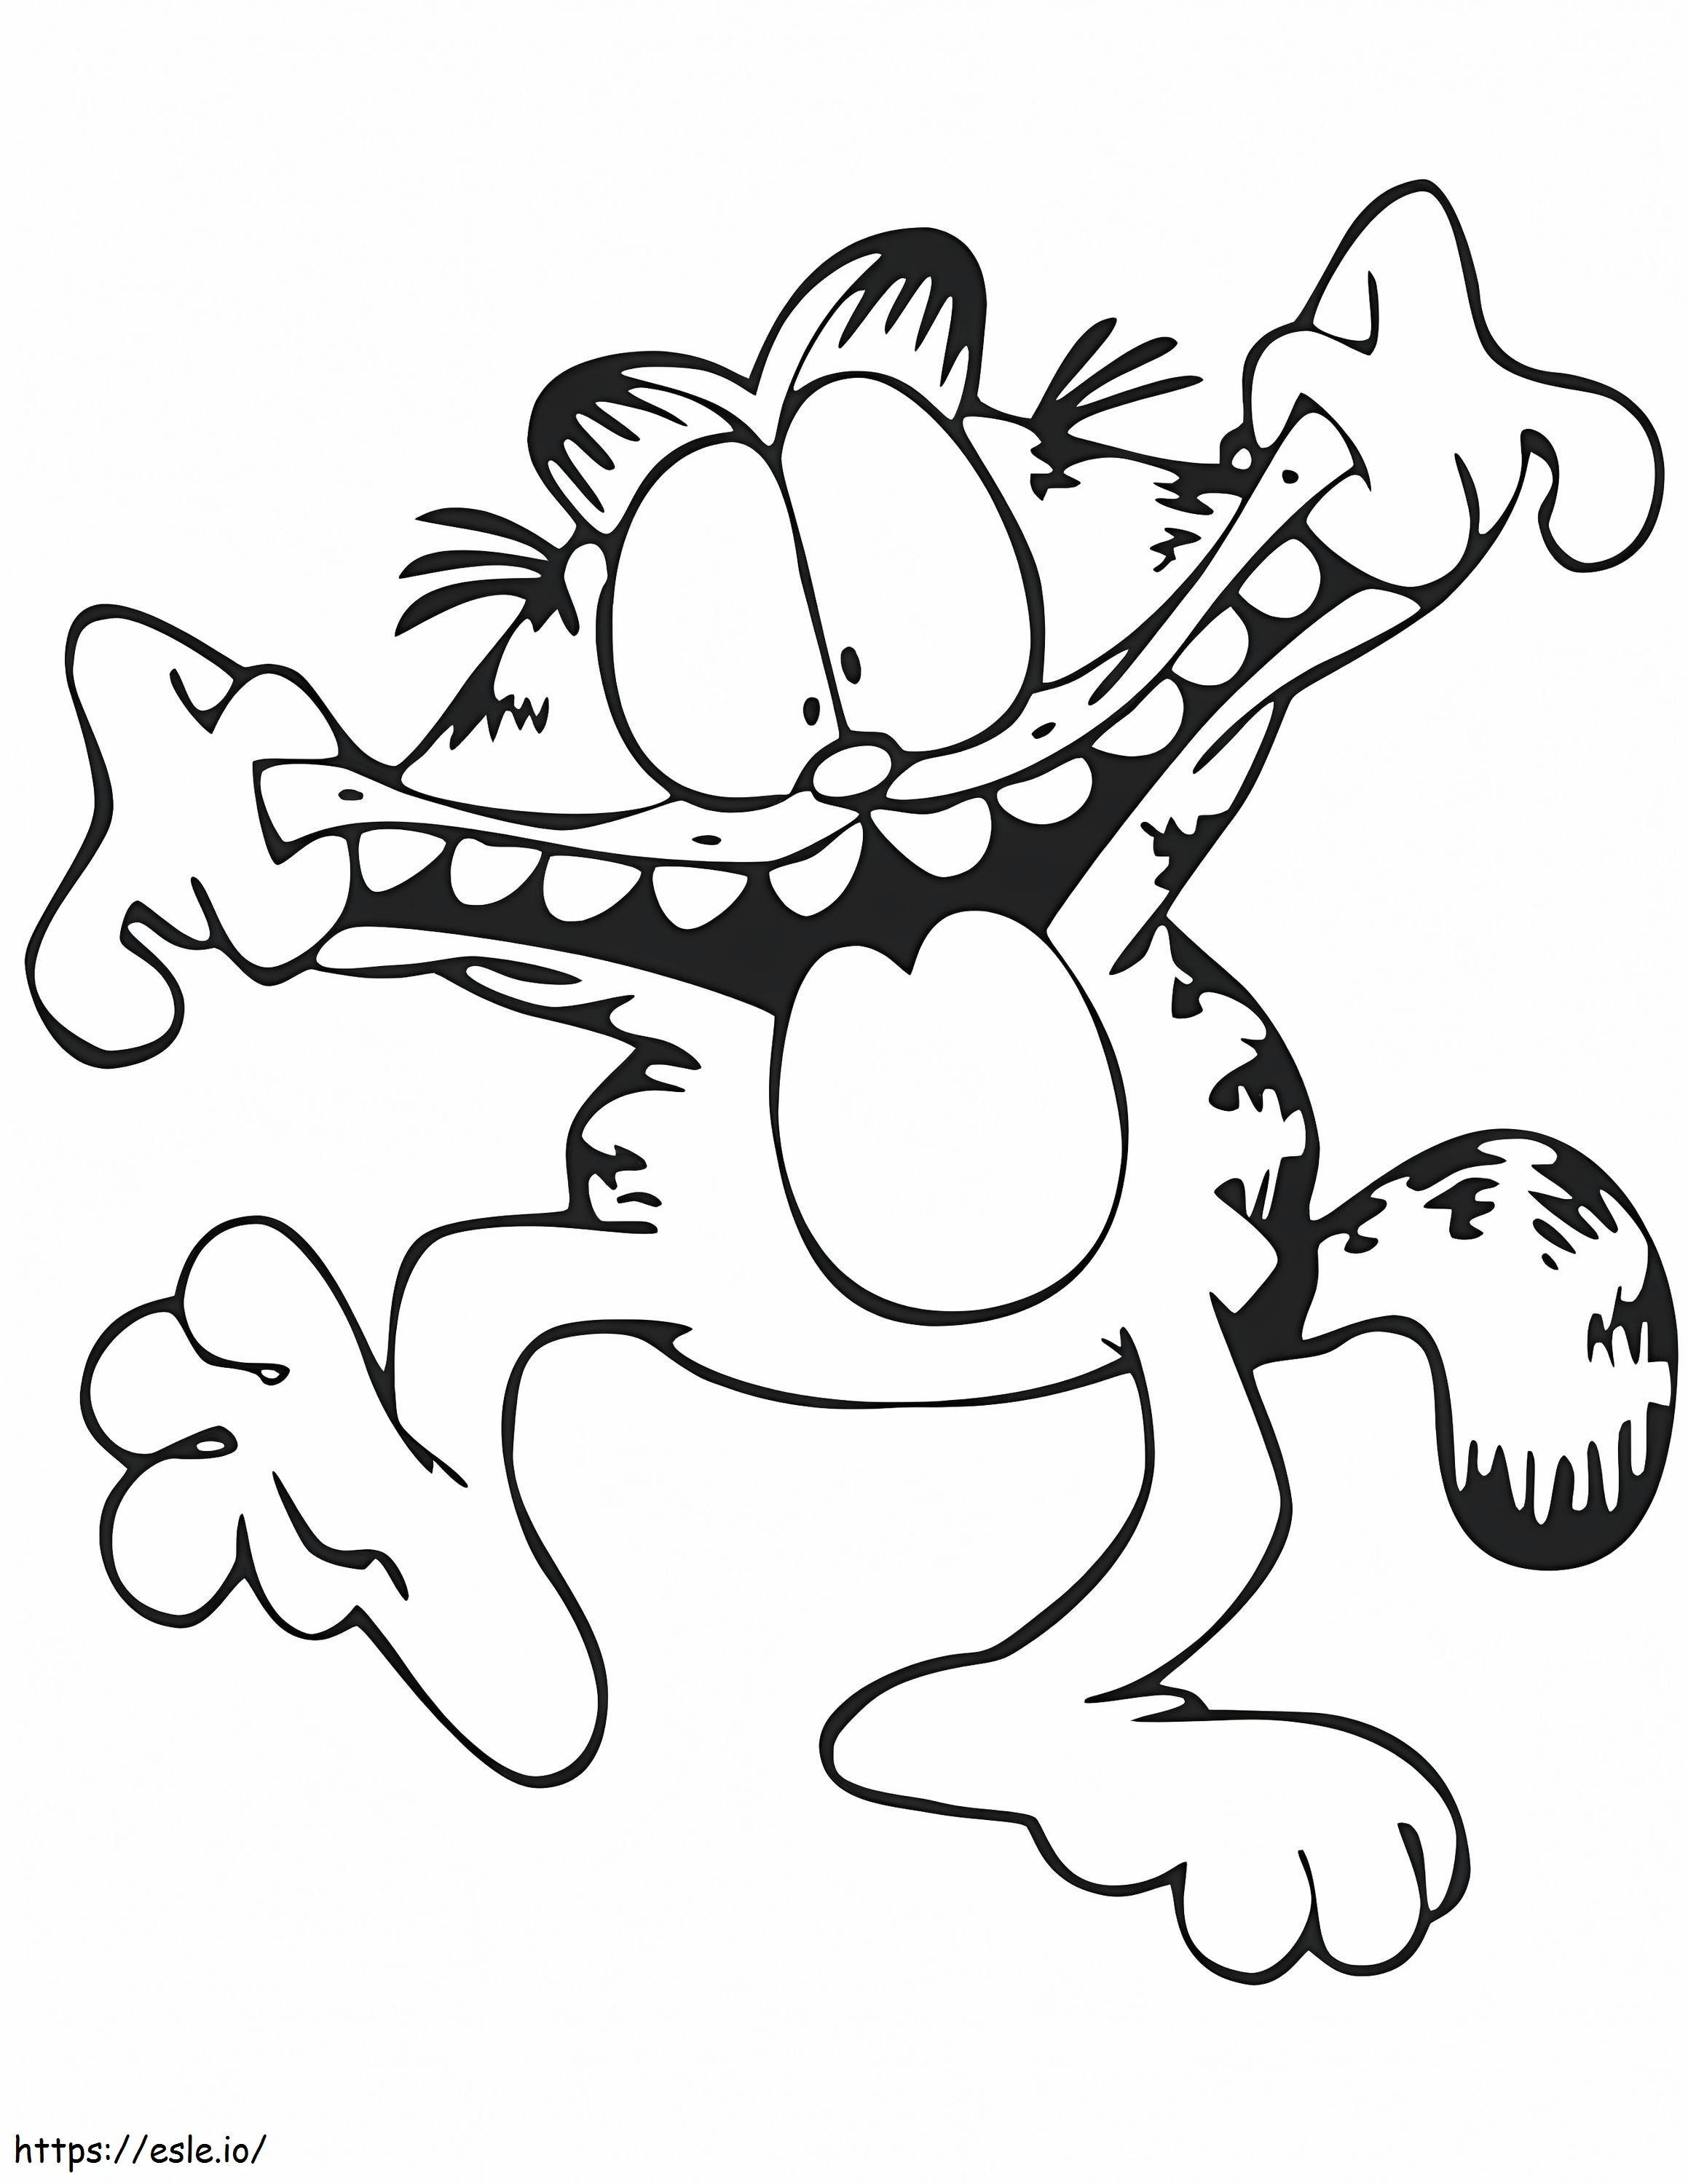 Lustiger Garfield ausmalbilder